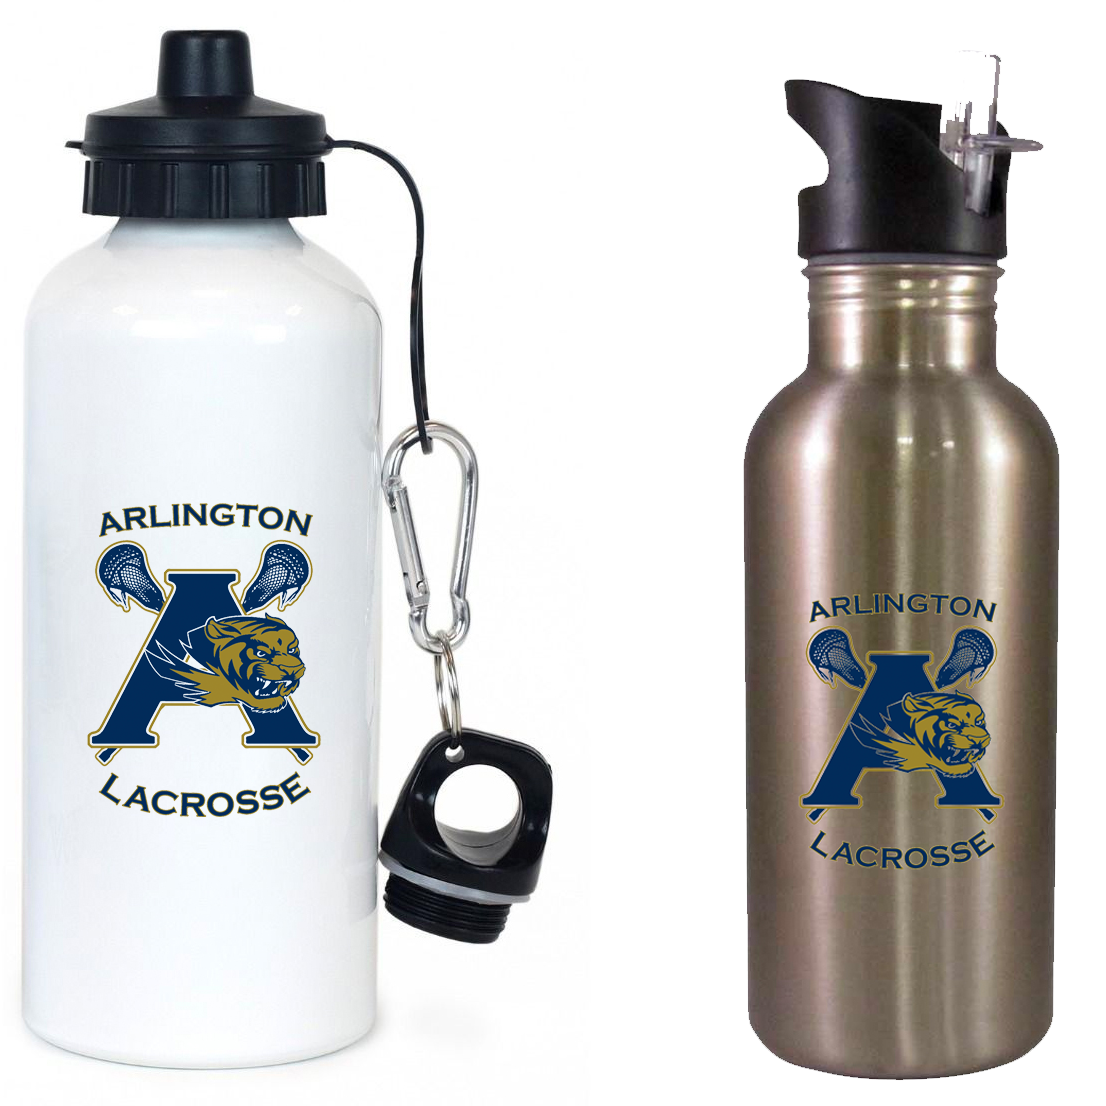 Arlington Lacrosse Team Water Bottle